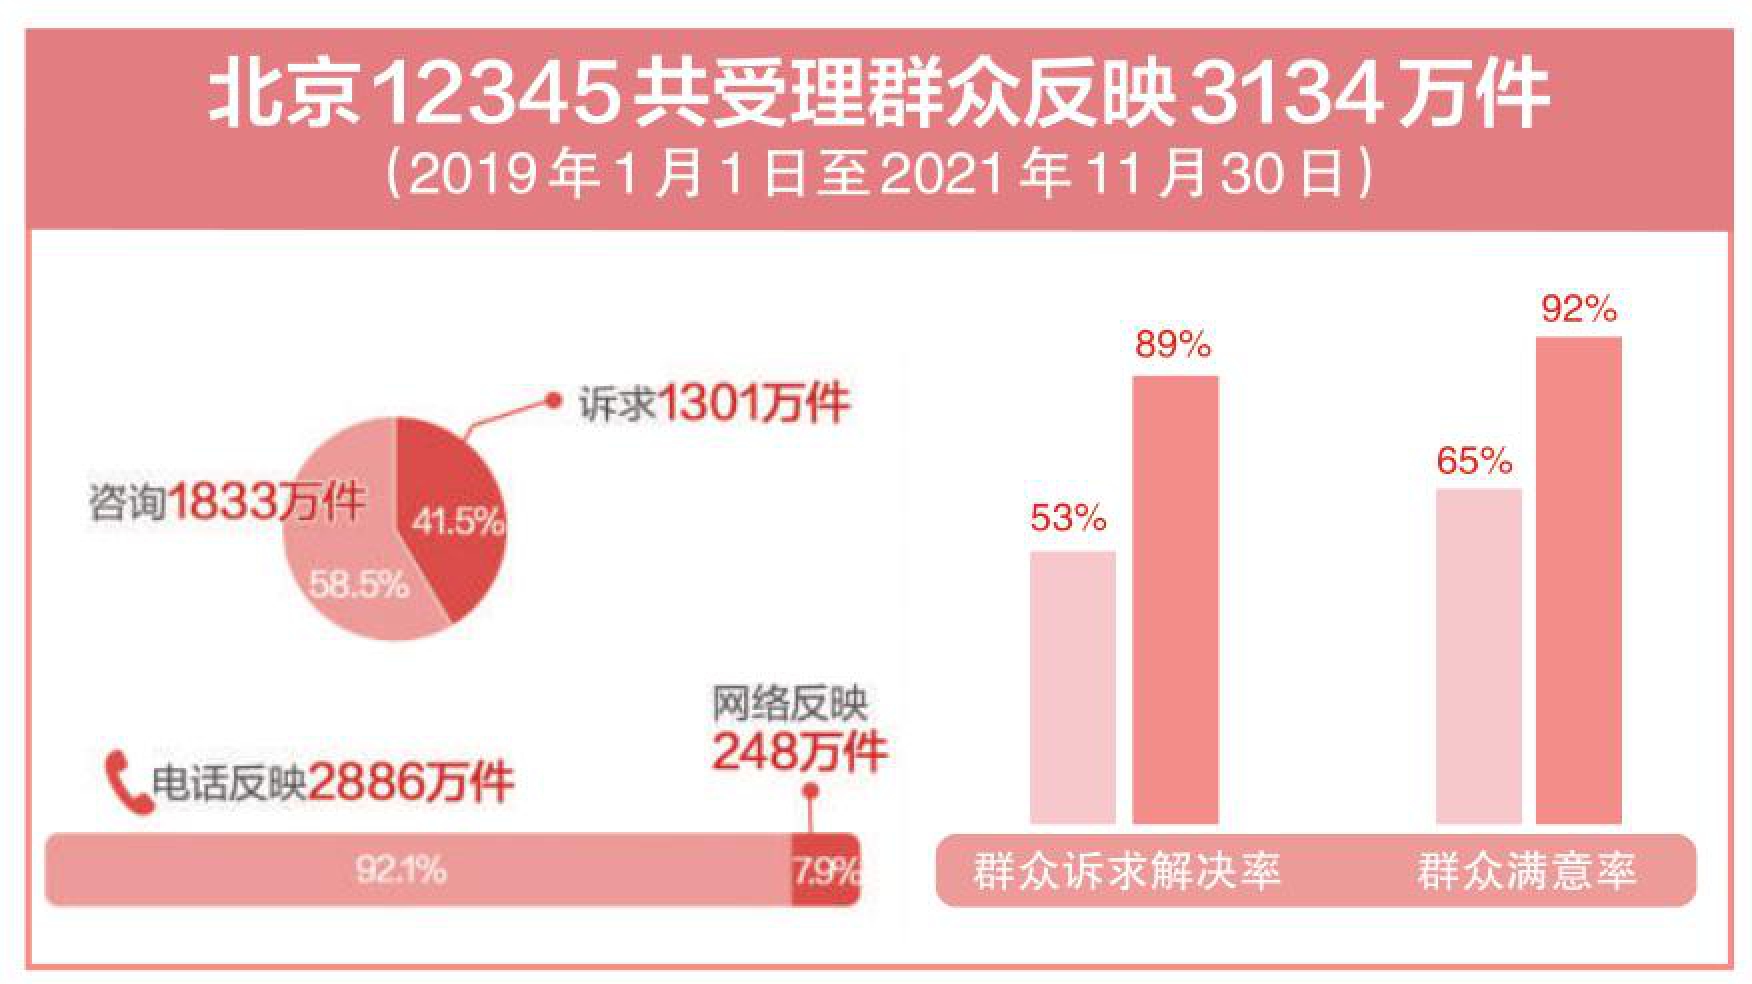 探索超大城市治理路径 北京12345热线3年受理群众反映3134万件